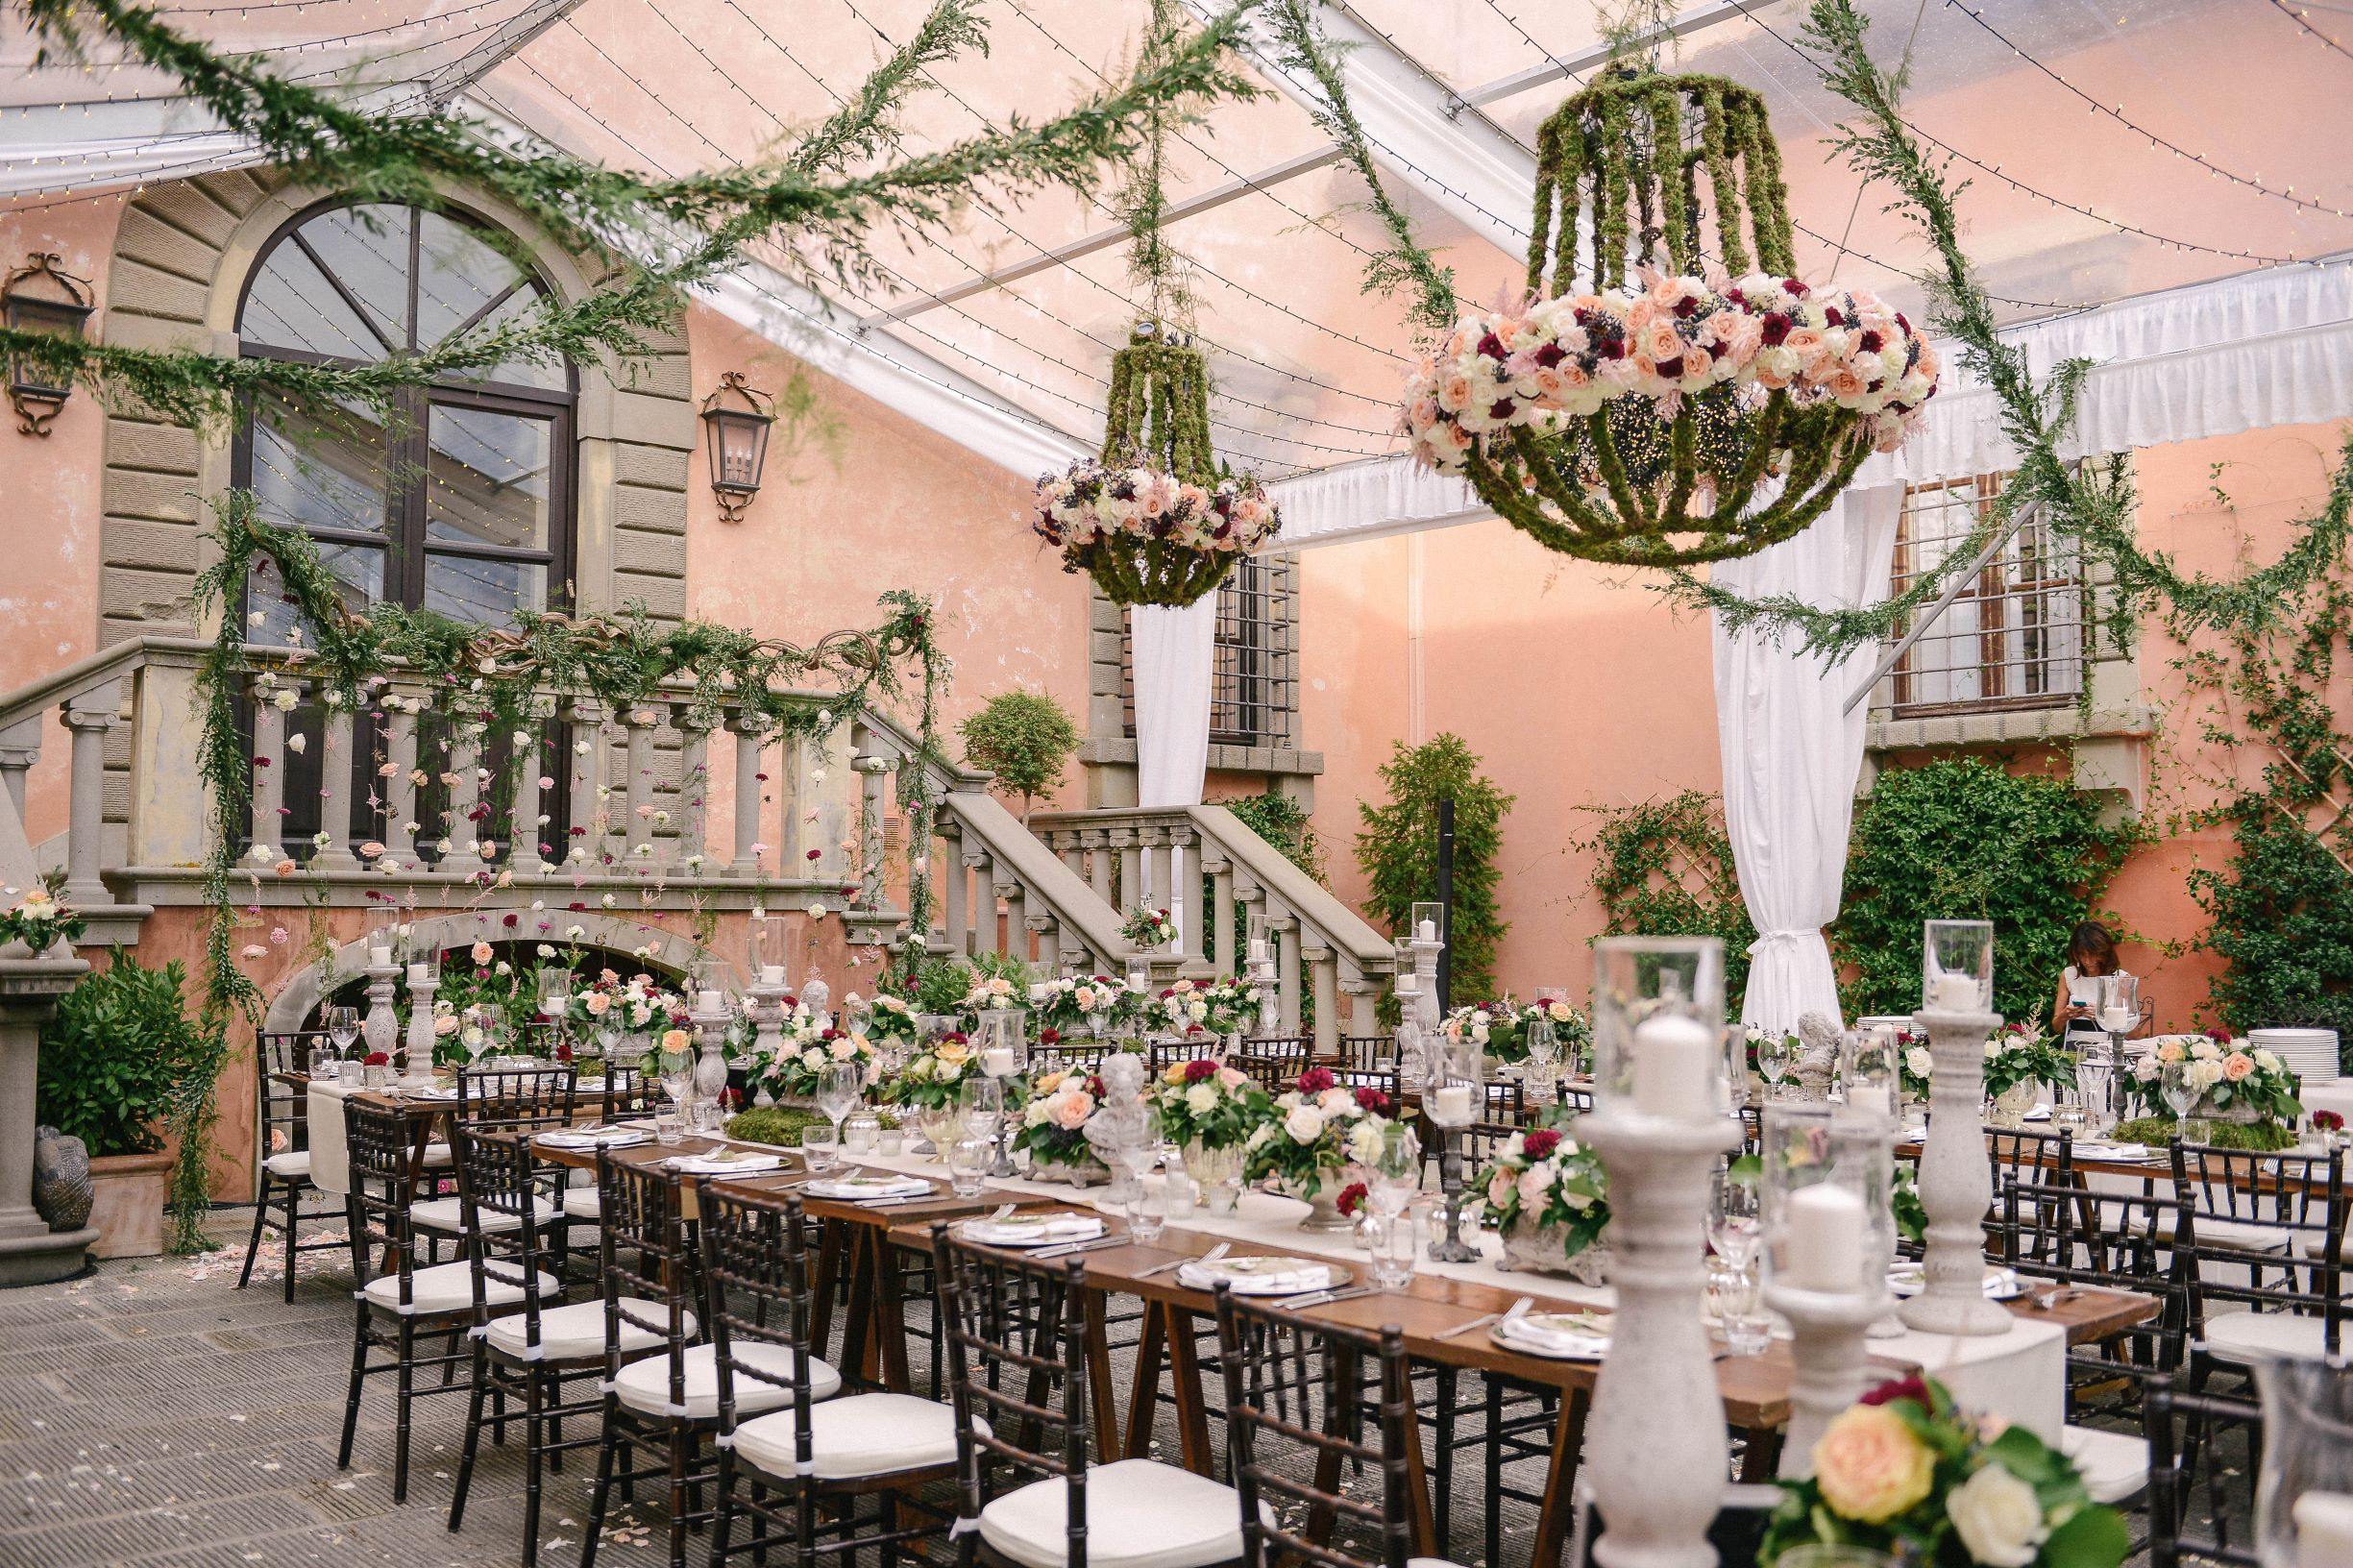 Anne & Imran – Fall Floral Fantasy Wedding in Tuscany